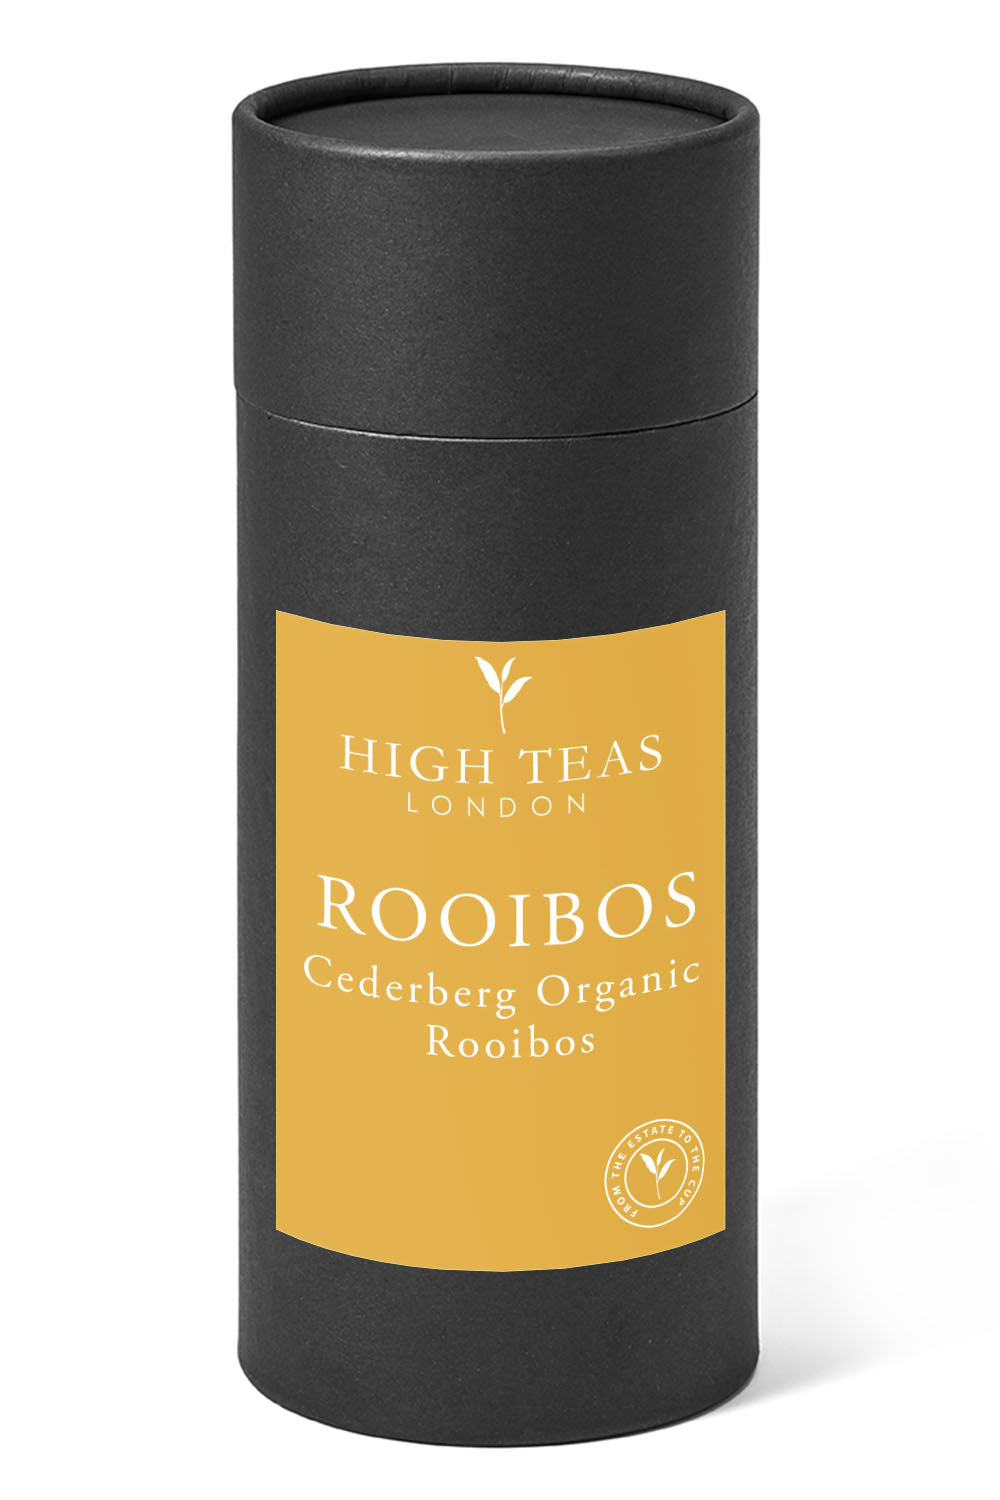 Cederberg Organic Rooibos-150g Gift-Loose Leaf Tea-High Teas